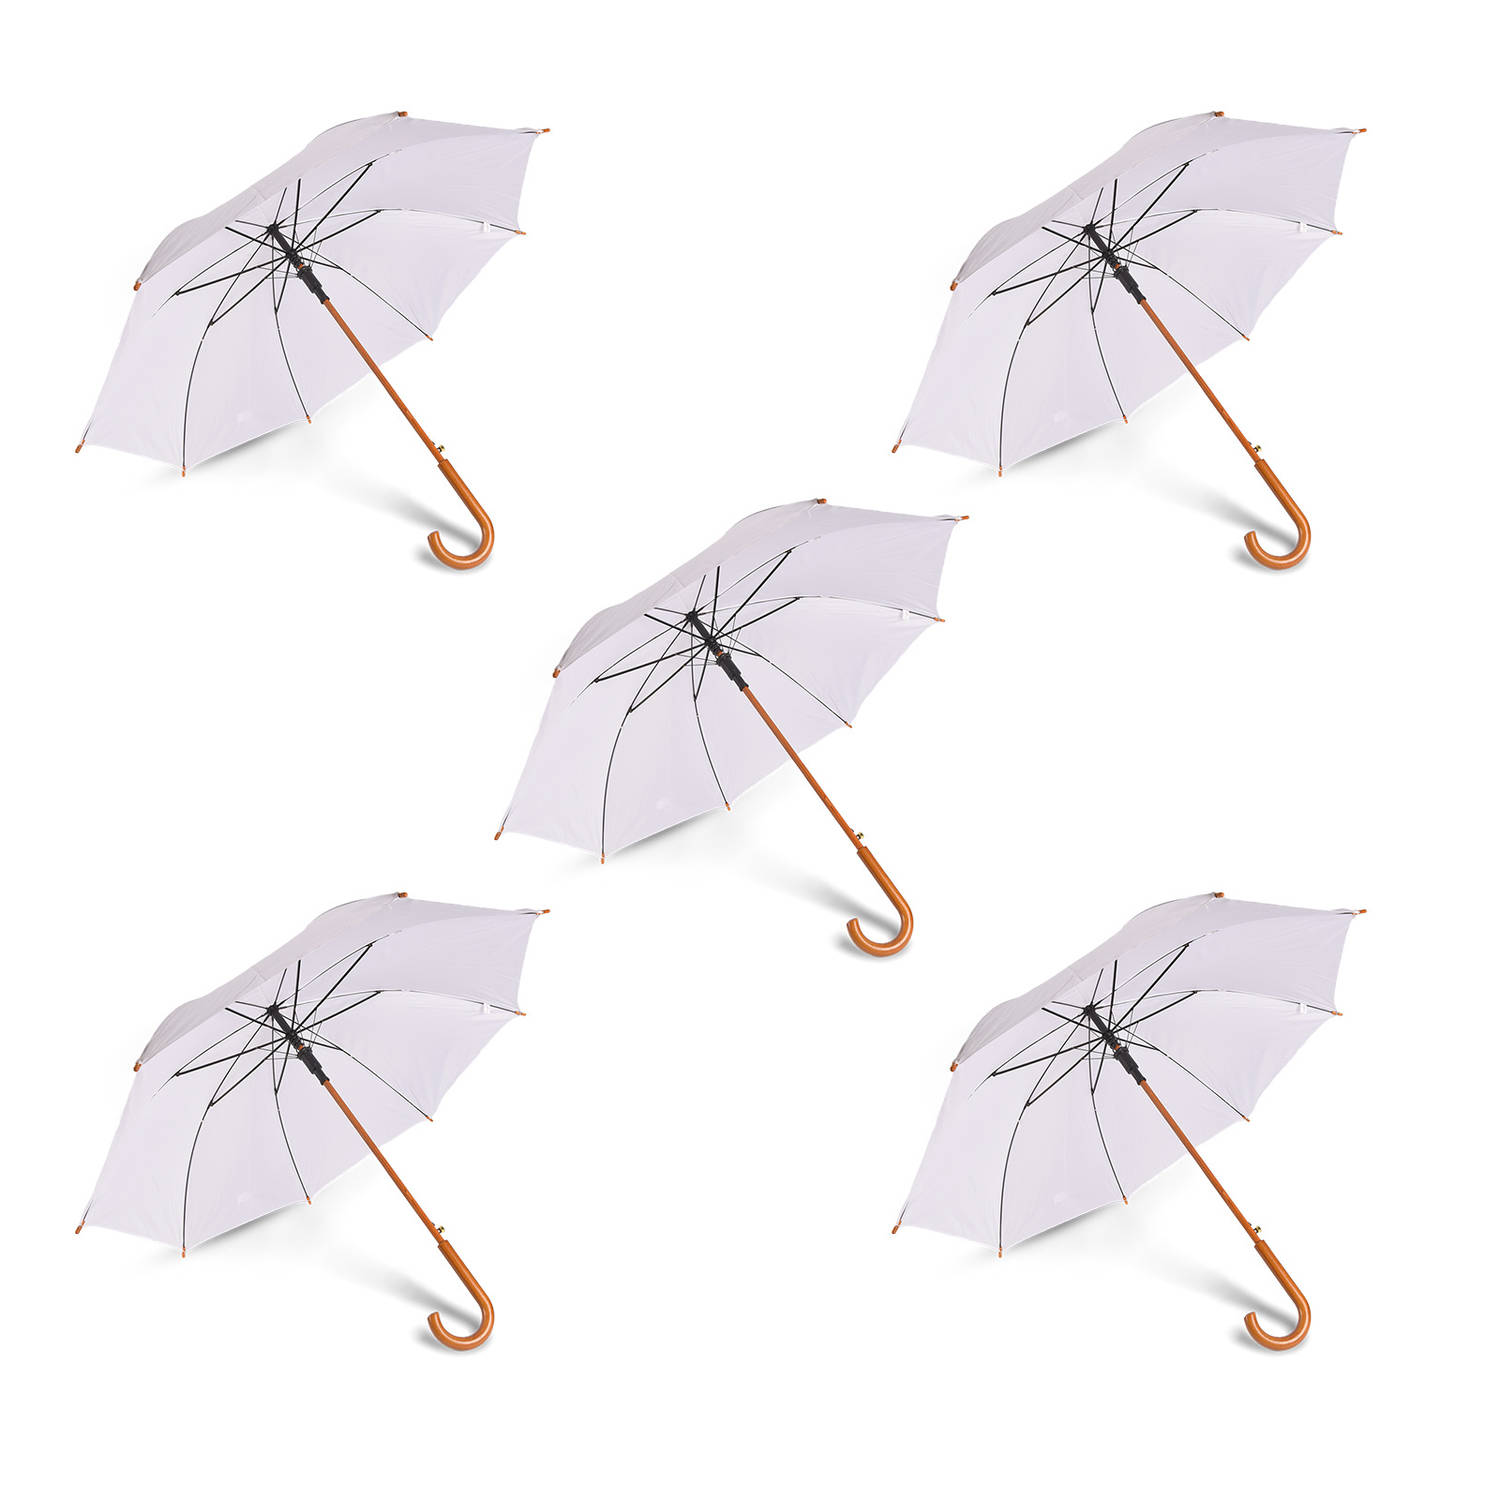 Elegante Trouwparaplu's Set voor Volwassenen - 102cm - Set van 5 - Wit - Perfect voor Bruiloften en Outdoor Evenementen – Met Houten Handvat